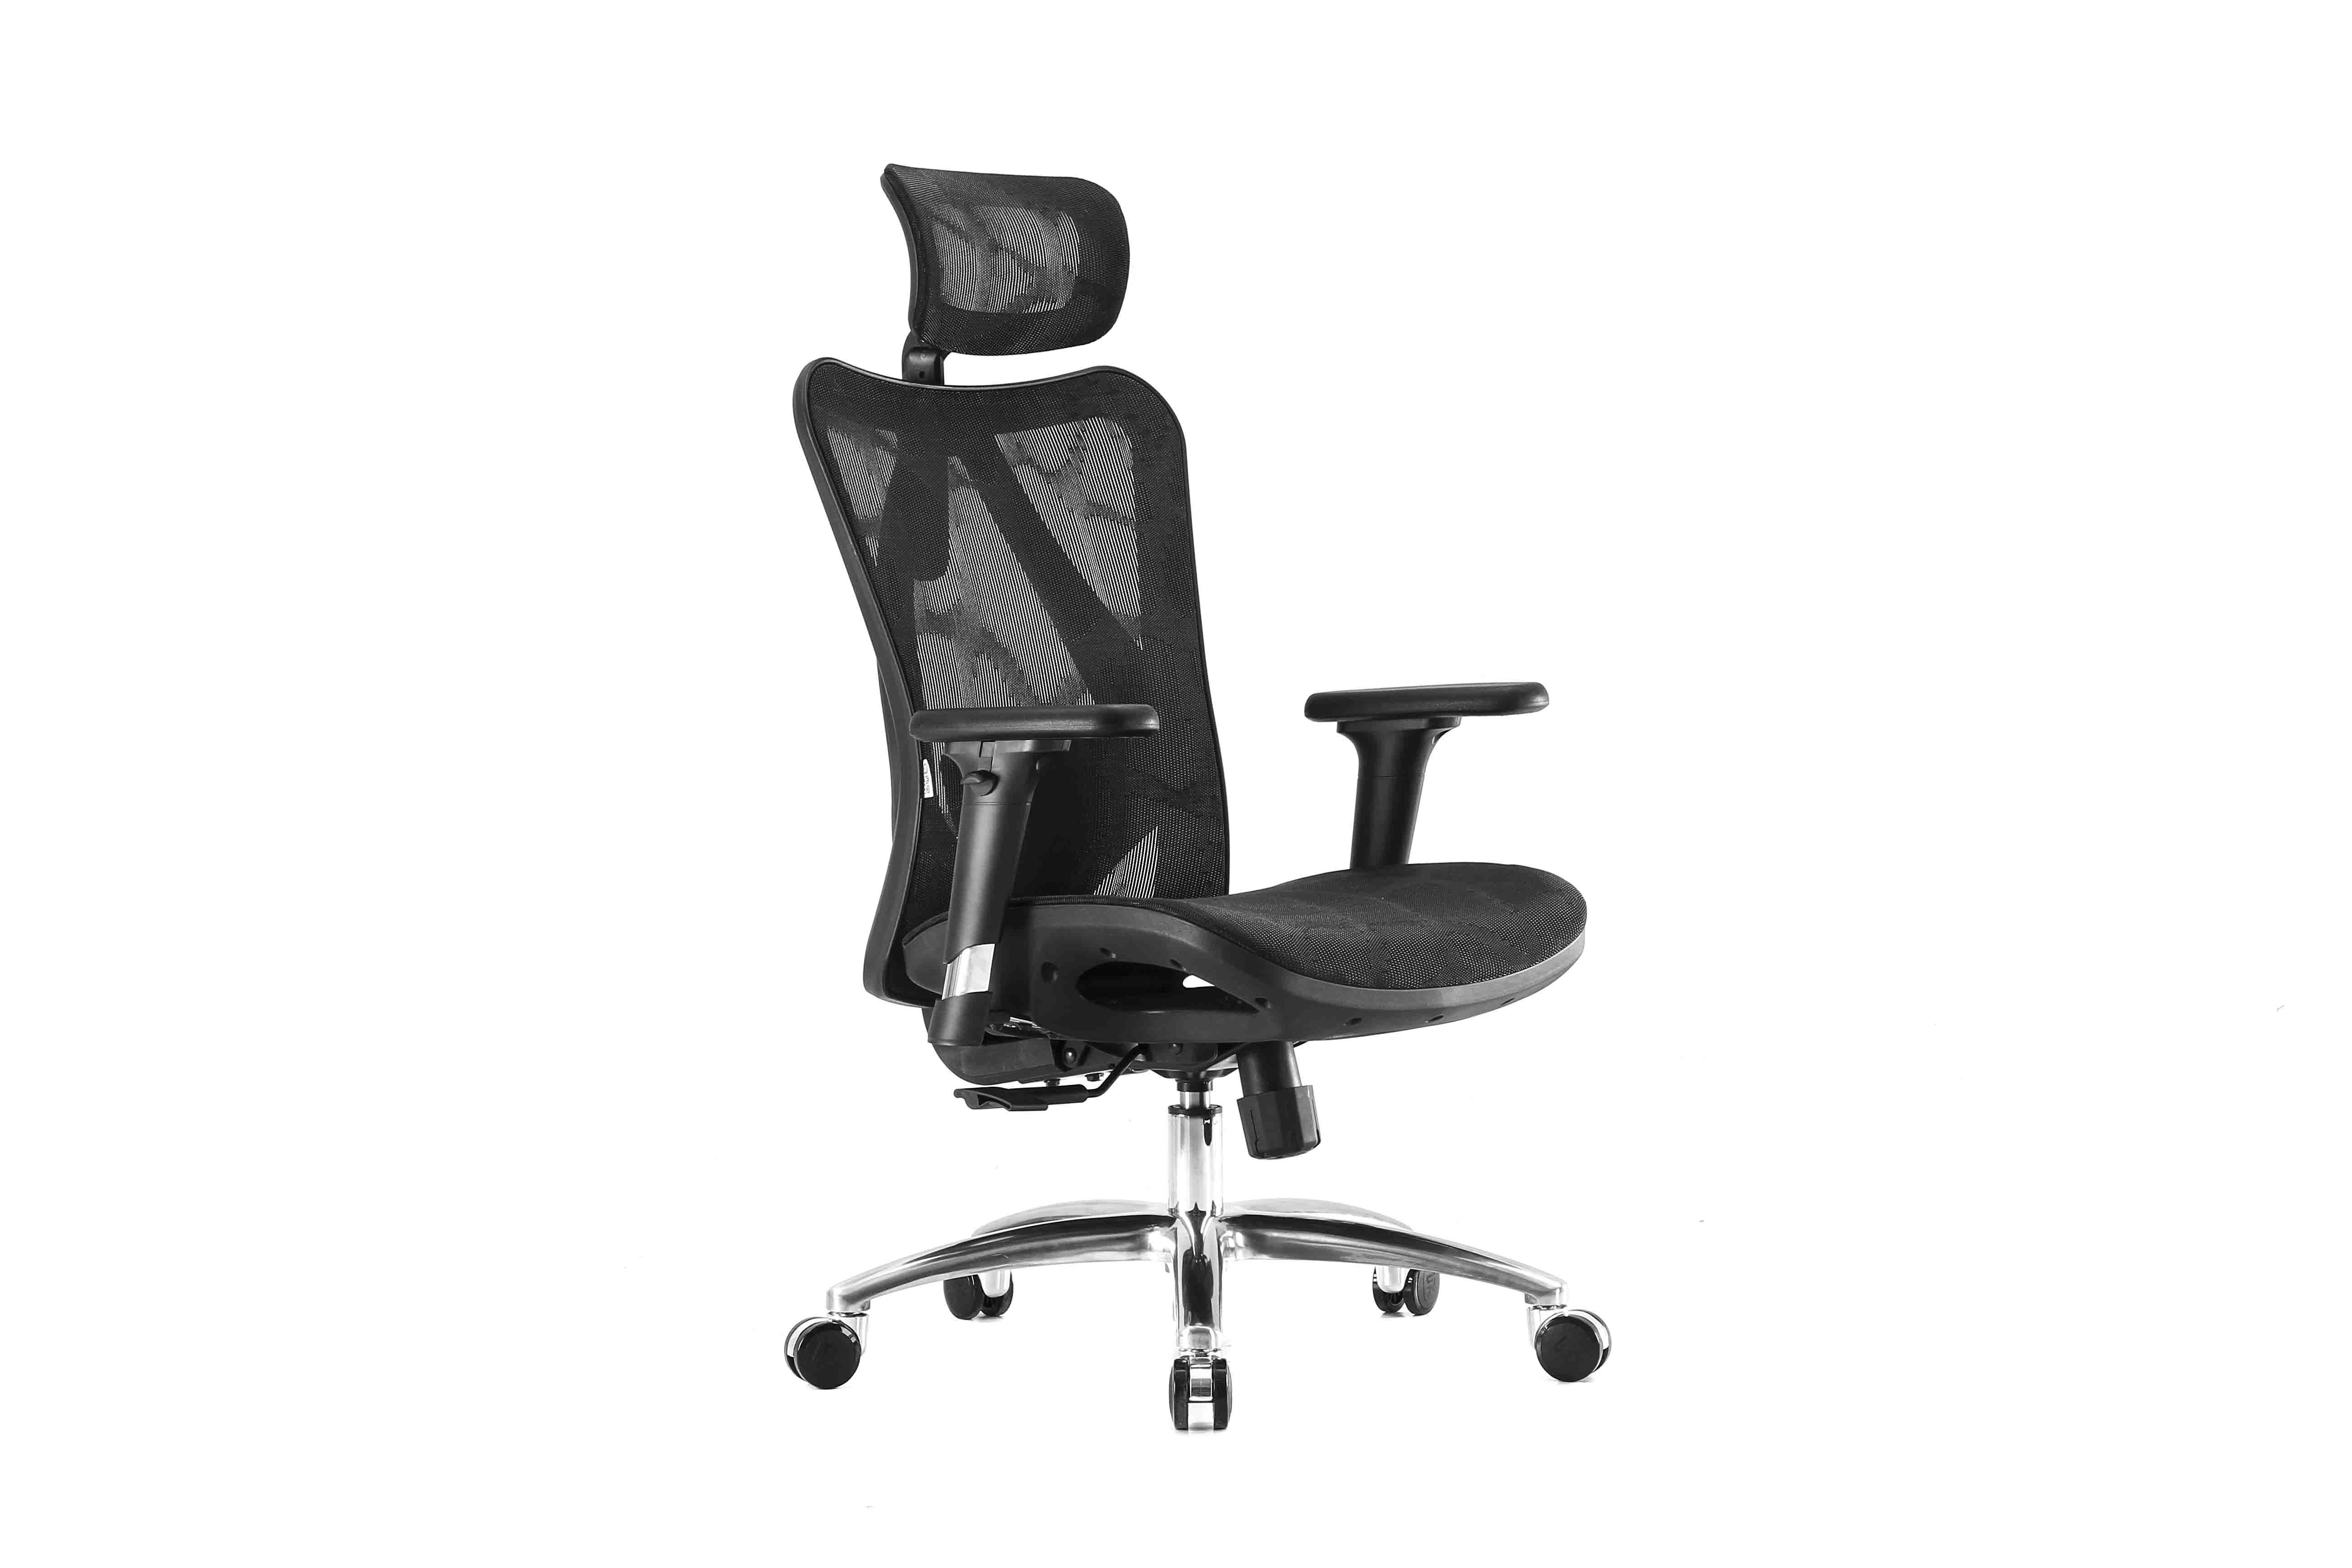 Эргономичное кресло Falto Viva Air (каркас чёрный, сетка чёрный)